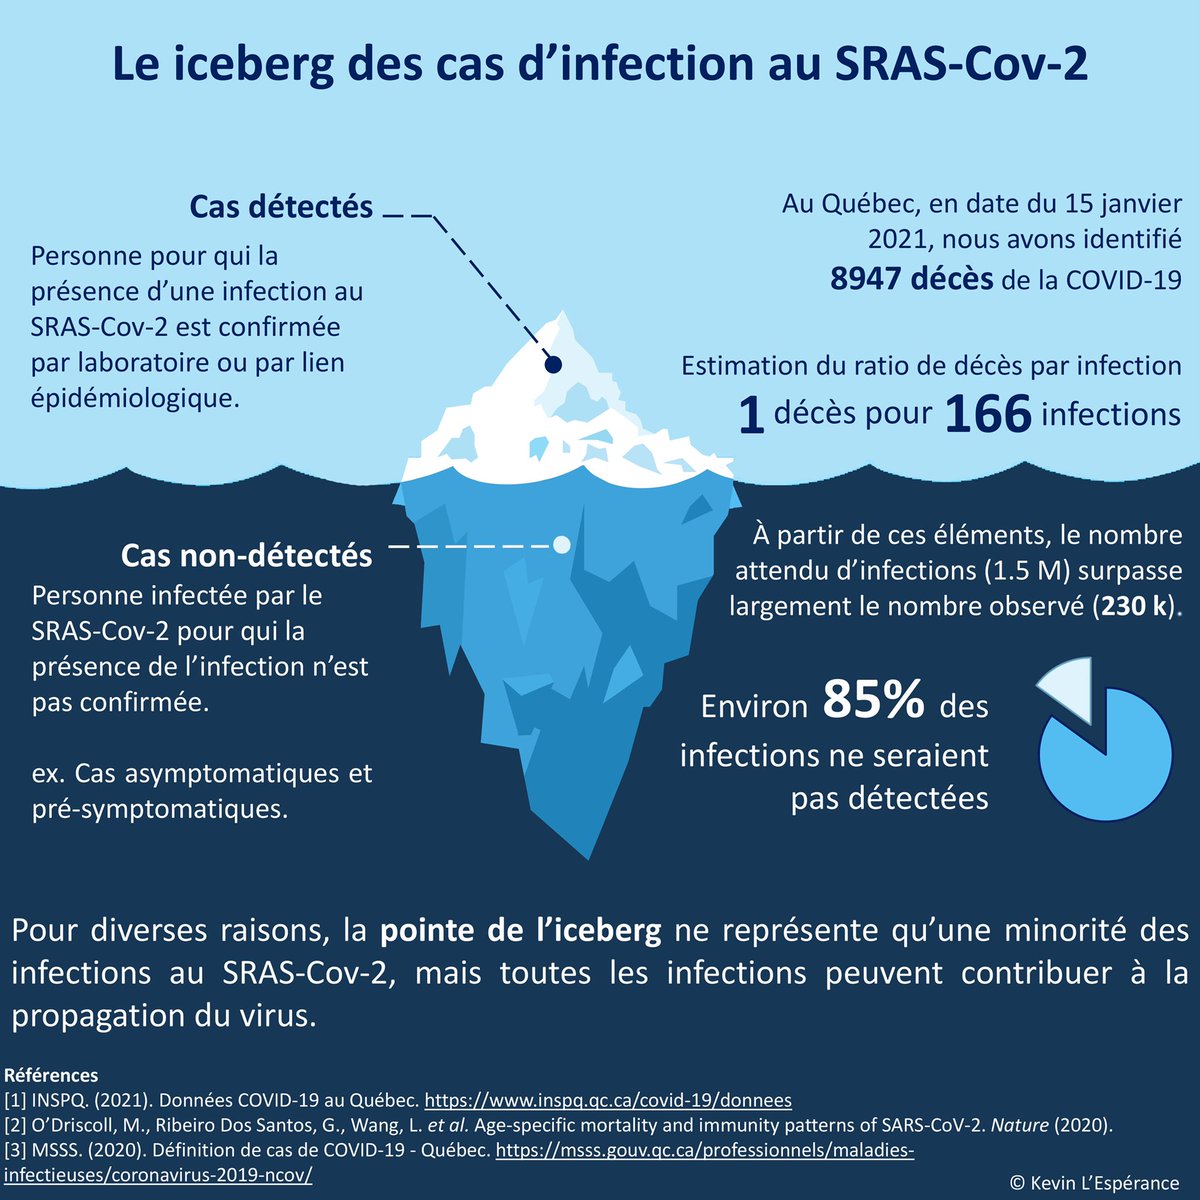 Les cas apparents d’infection au SRAS-Cov-2 ne sont que la pointe de l’iceberg. La majorité des cas ne sont pas apparents, mais toutes les infections peuvent contribuer à la propagation de la #COVID19 #epidemiology #publichealth #facts #Quebec #awareness #prevention